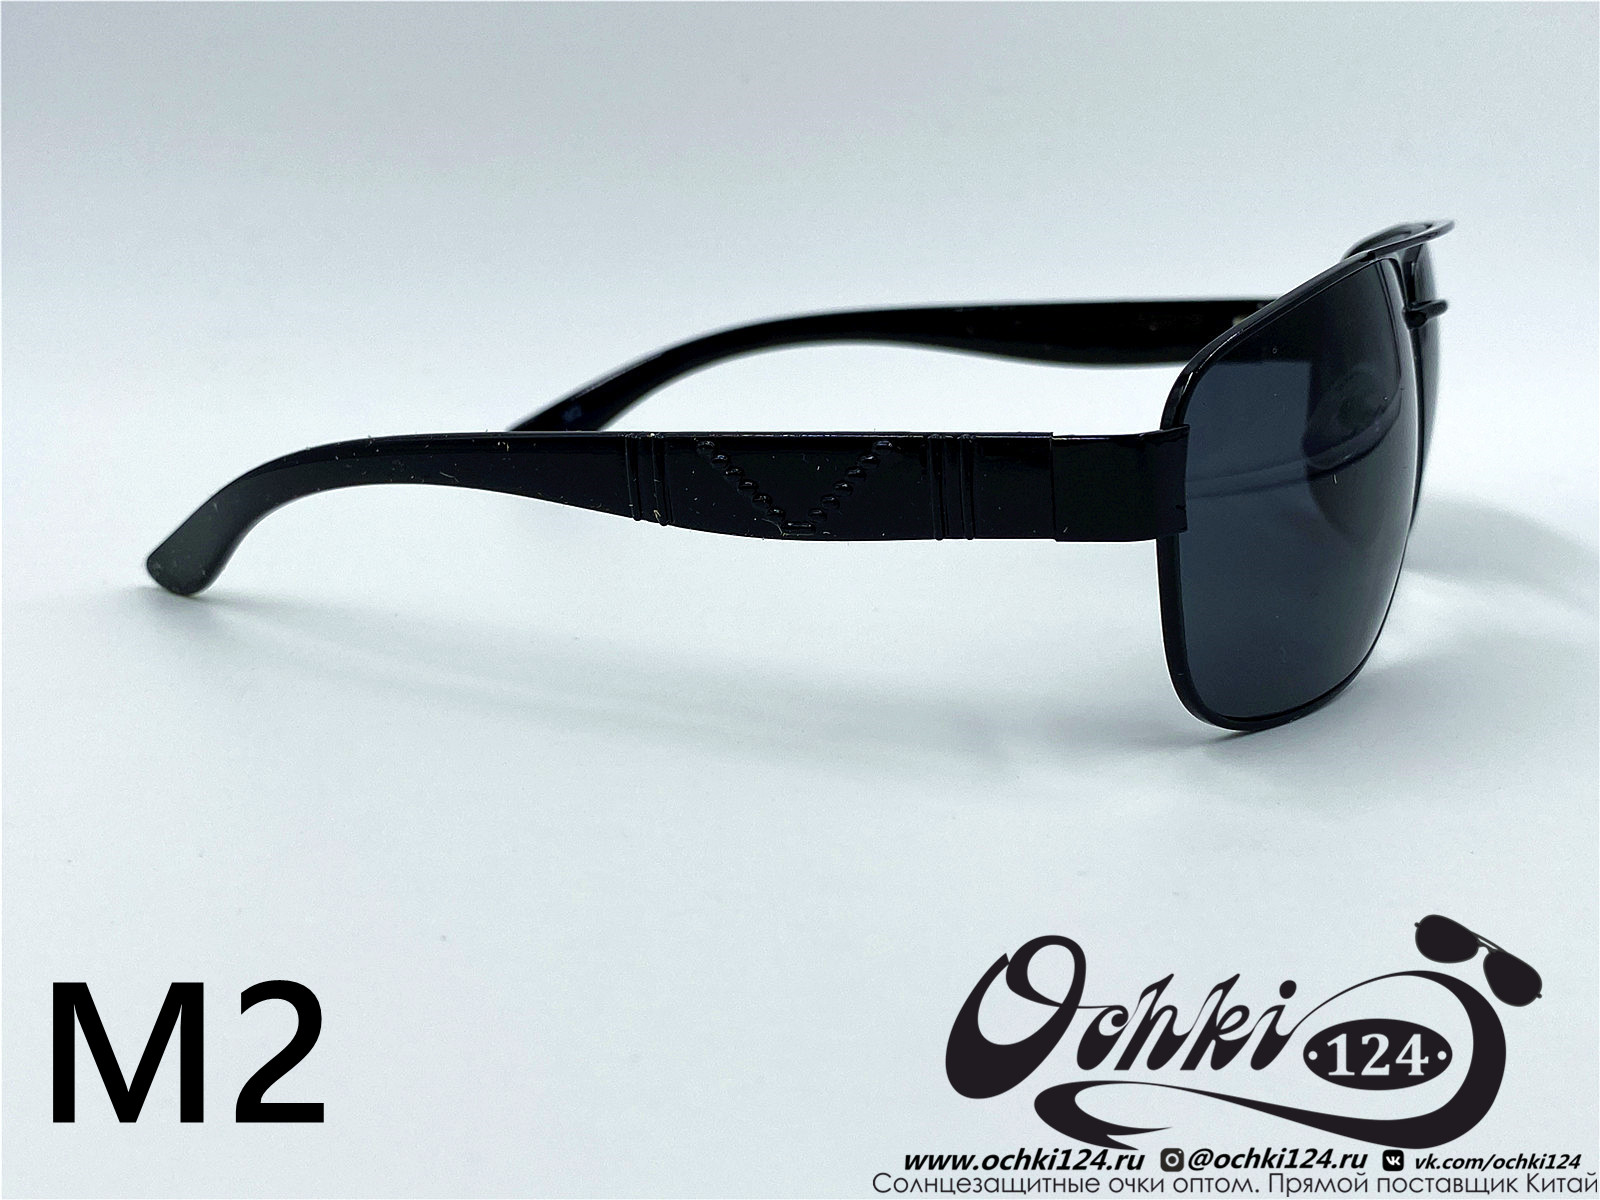  Солнцезащитные очки картинка 2022 Мужские Квадратные KaiFeng M2-1 